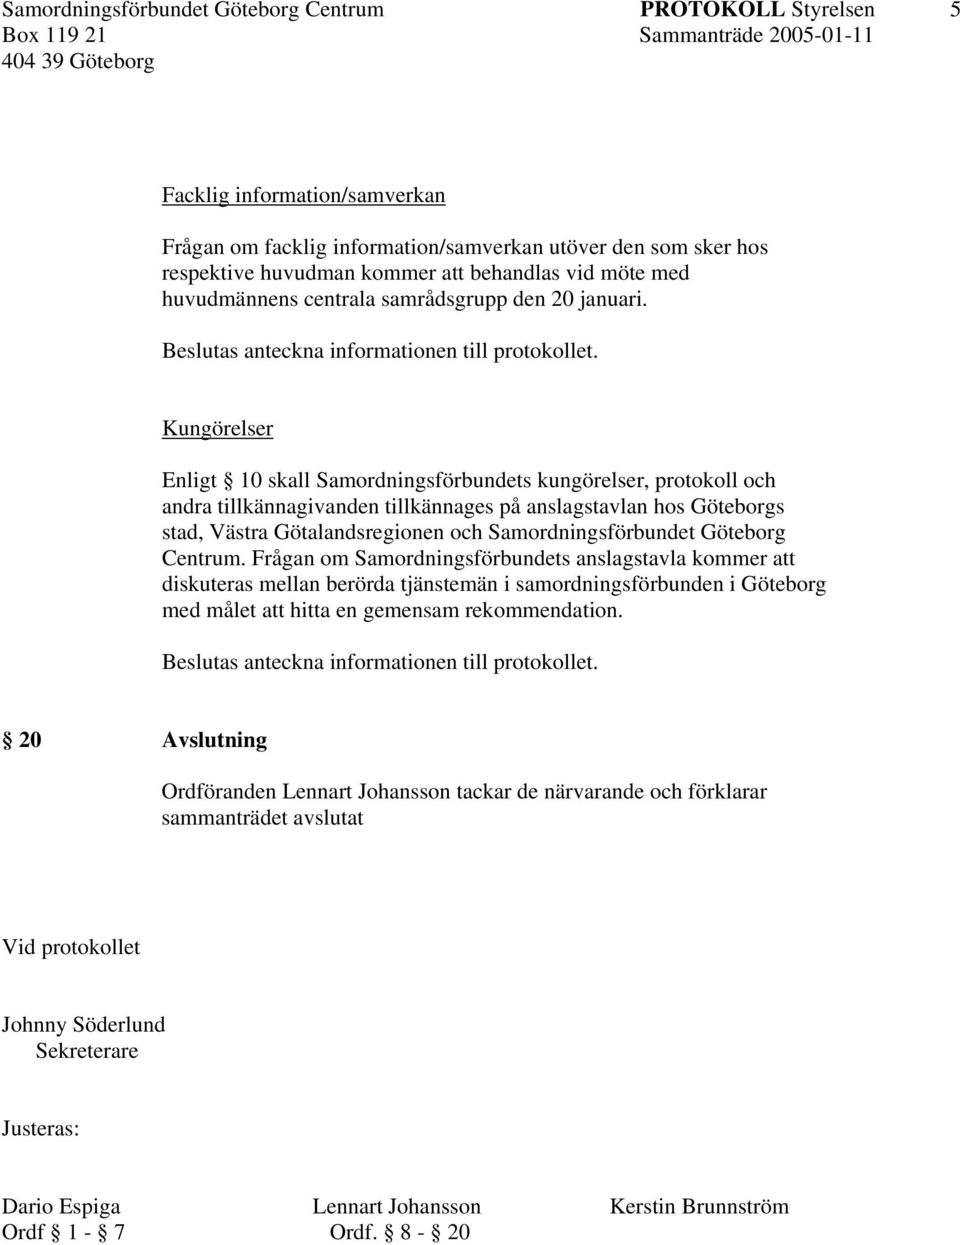 Kungörelser Enligt 10 skall Samordningsförbundets kungörelser, protokoll och andra tillkännagivanden tillkännages på anslagstavlan hos Göteborgs stad, Västra Götalandsregionen och